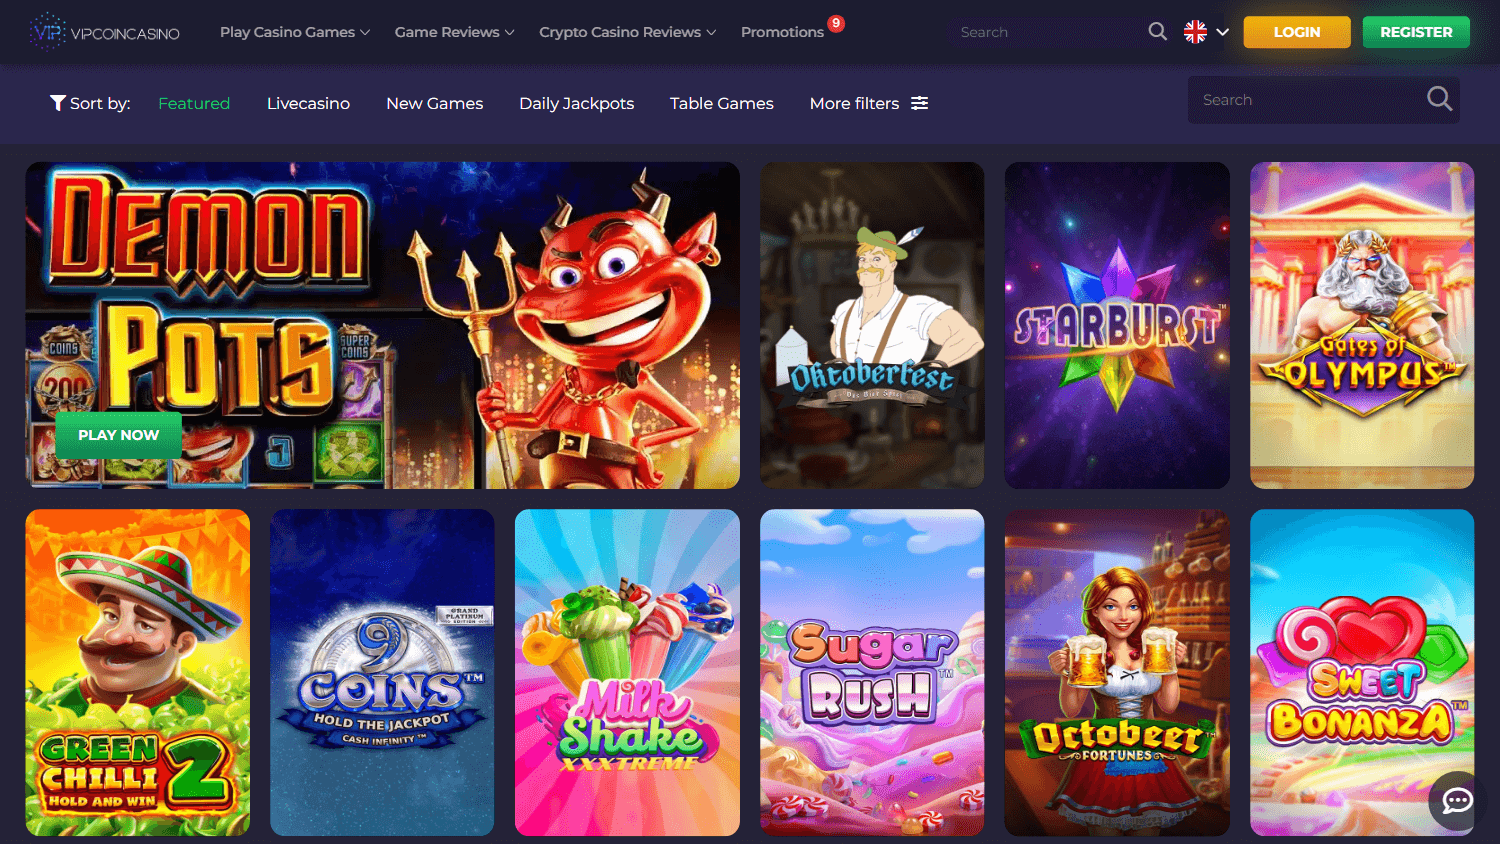 kraken_casino_promotions_desktop